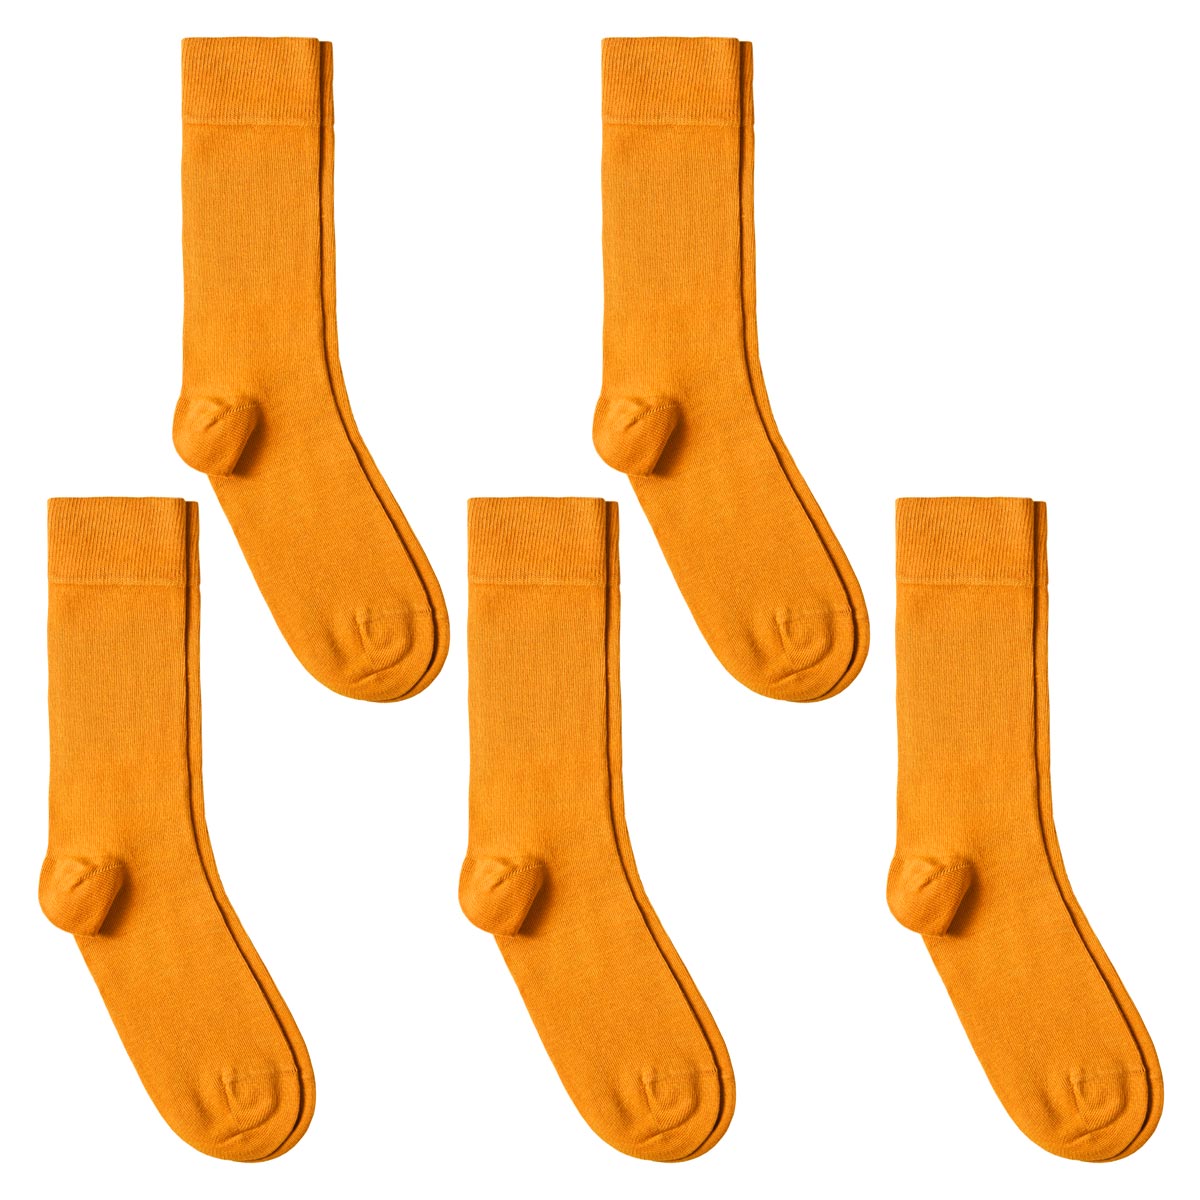 CH-00593_A12-1--_Lot-5-paires-de-chaussettes-homme-oranges-unies